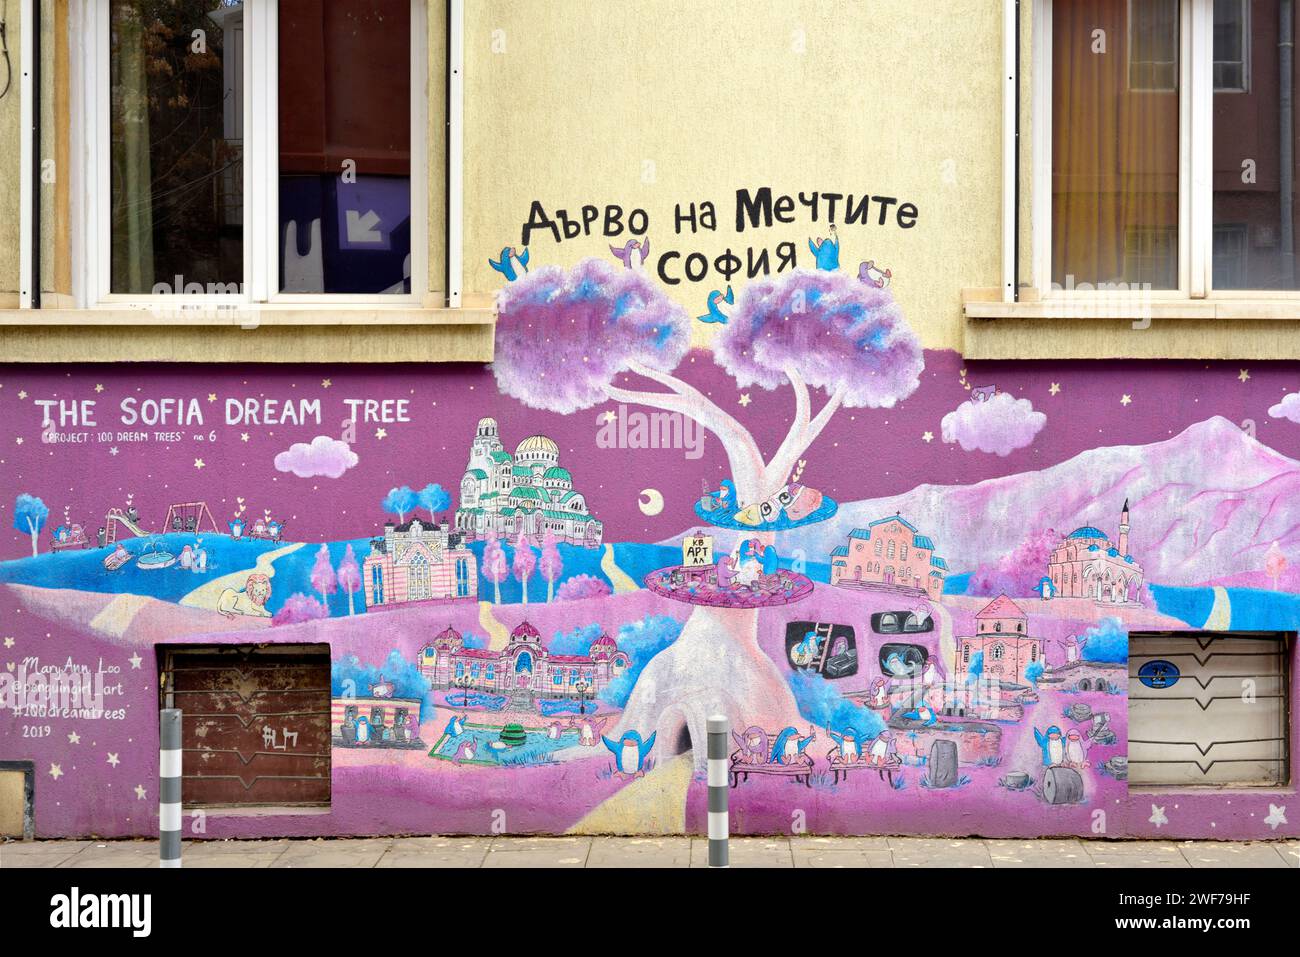 Le Sofia Dream Tree peinture graffiti Street art projet avec texte cyrillique à Sofia ; Bulgarie ; Europe de l'est ; Balkans ; UE Banque D'Images